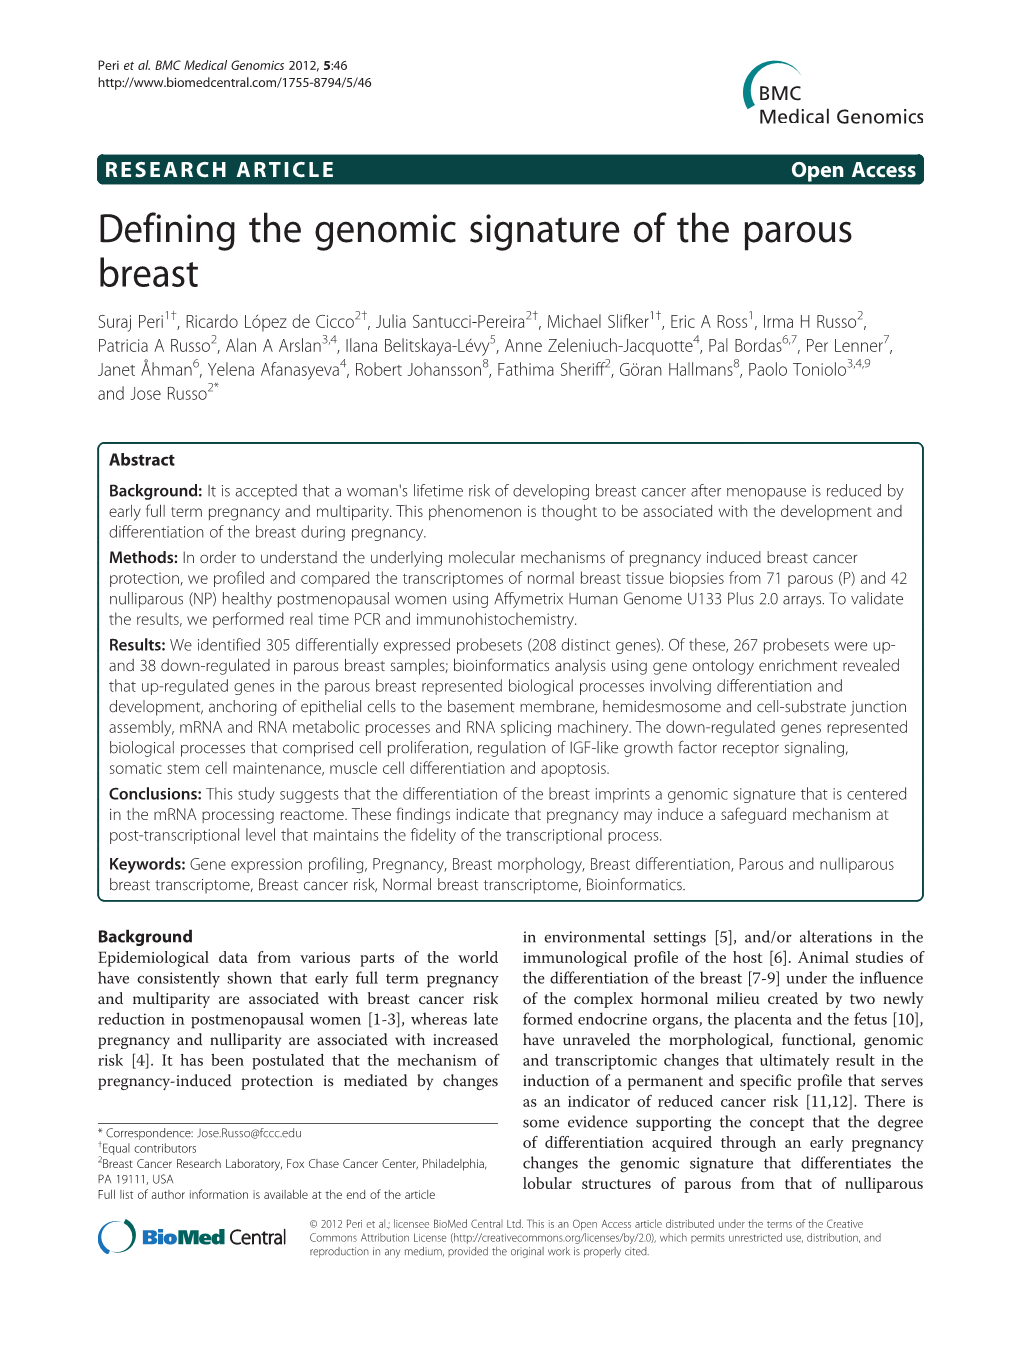 Defining the Genomic Signature of the Parous Breast